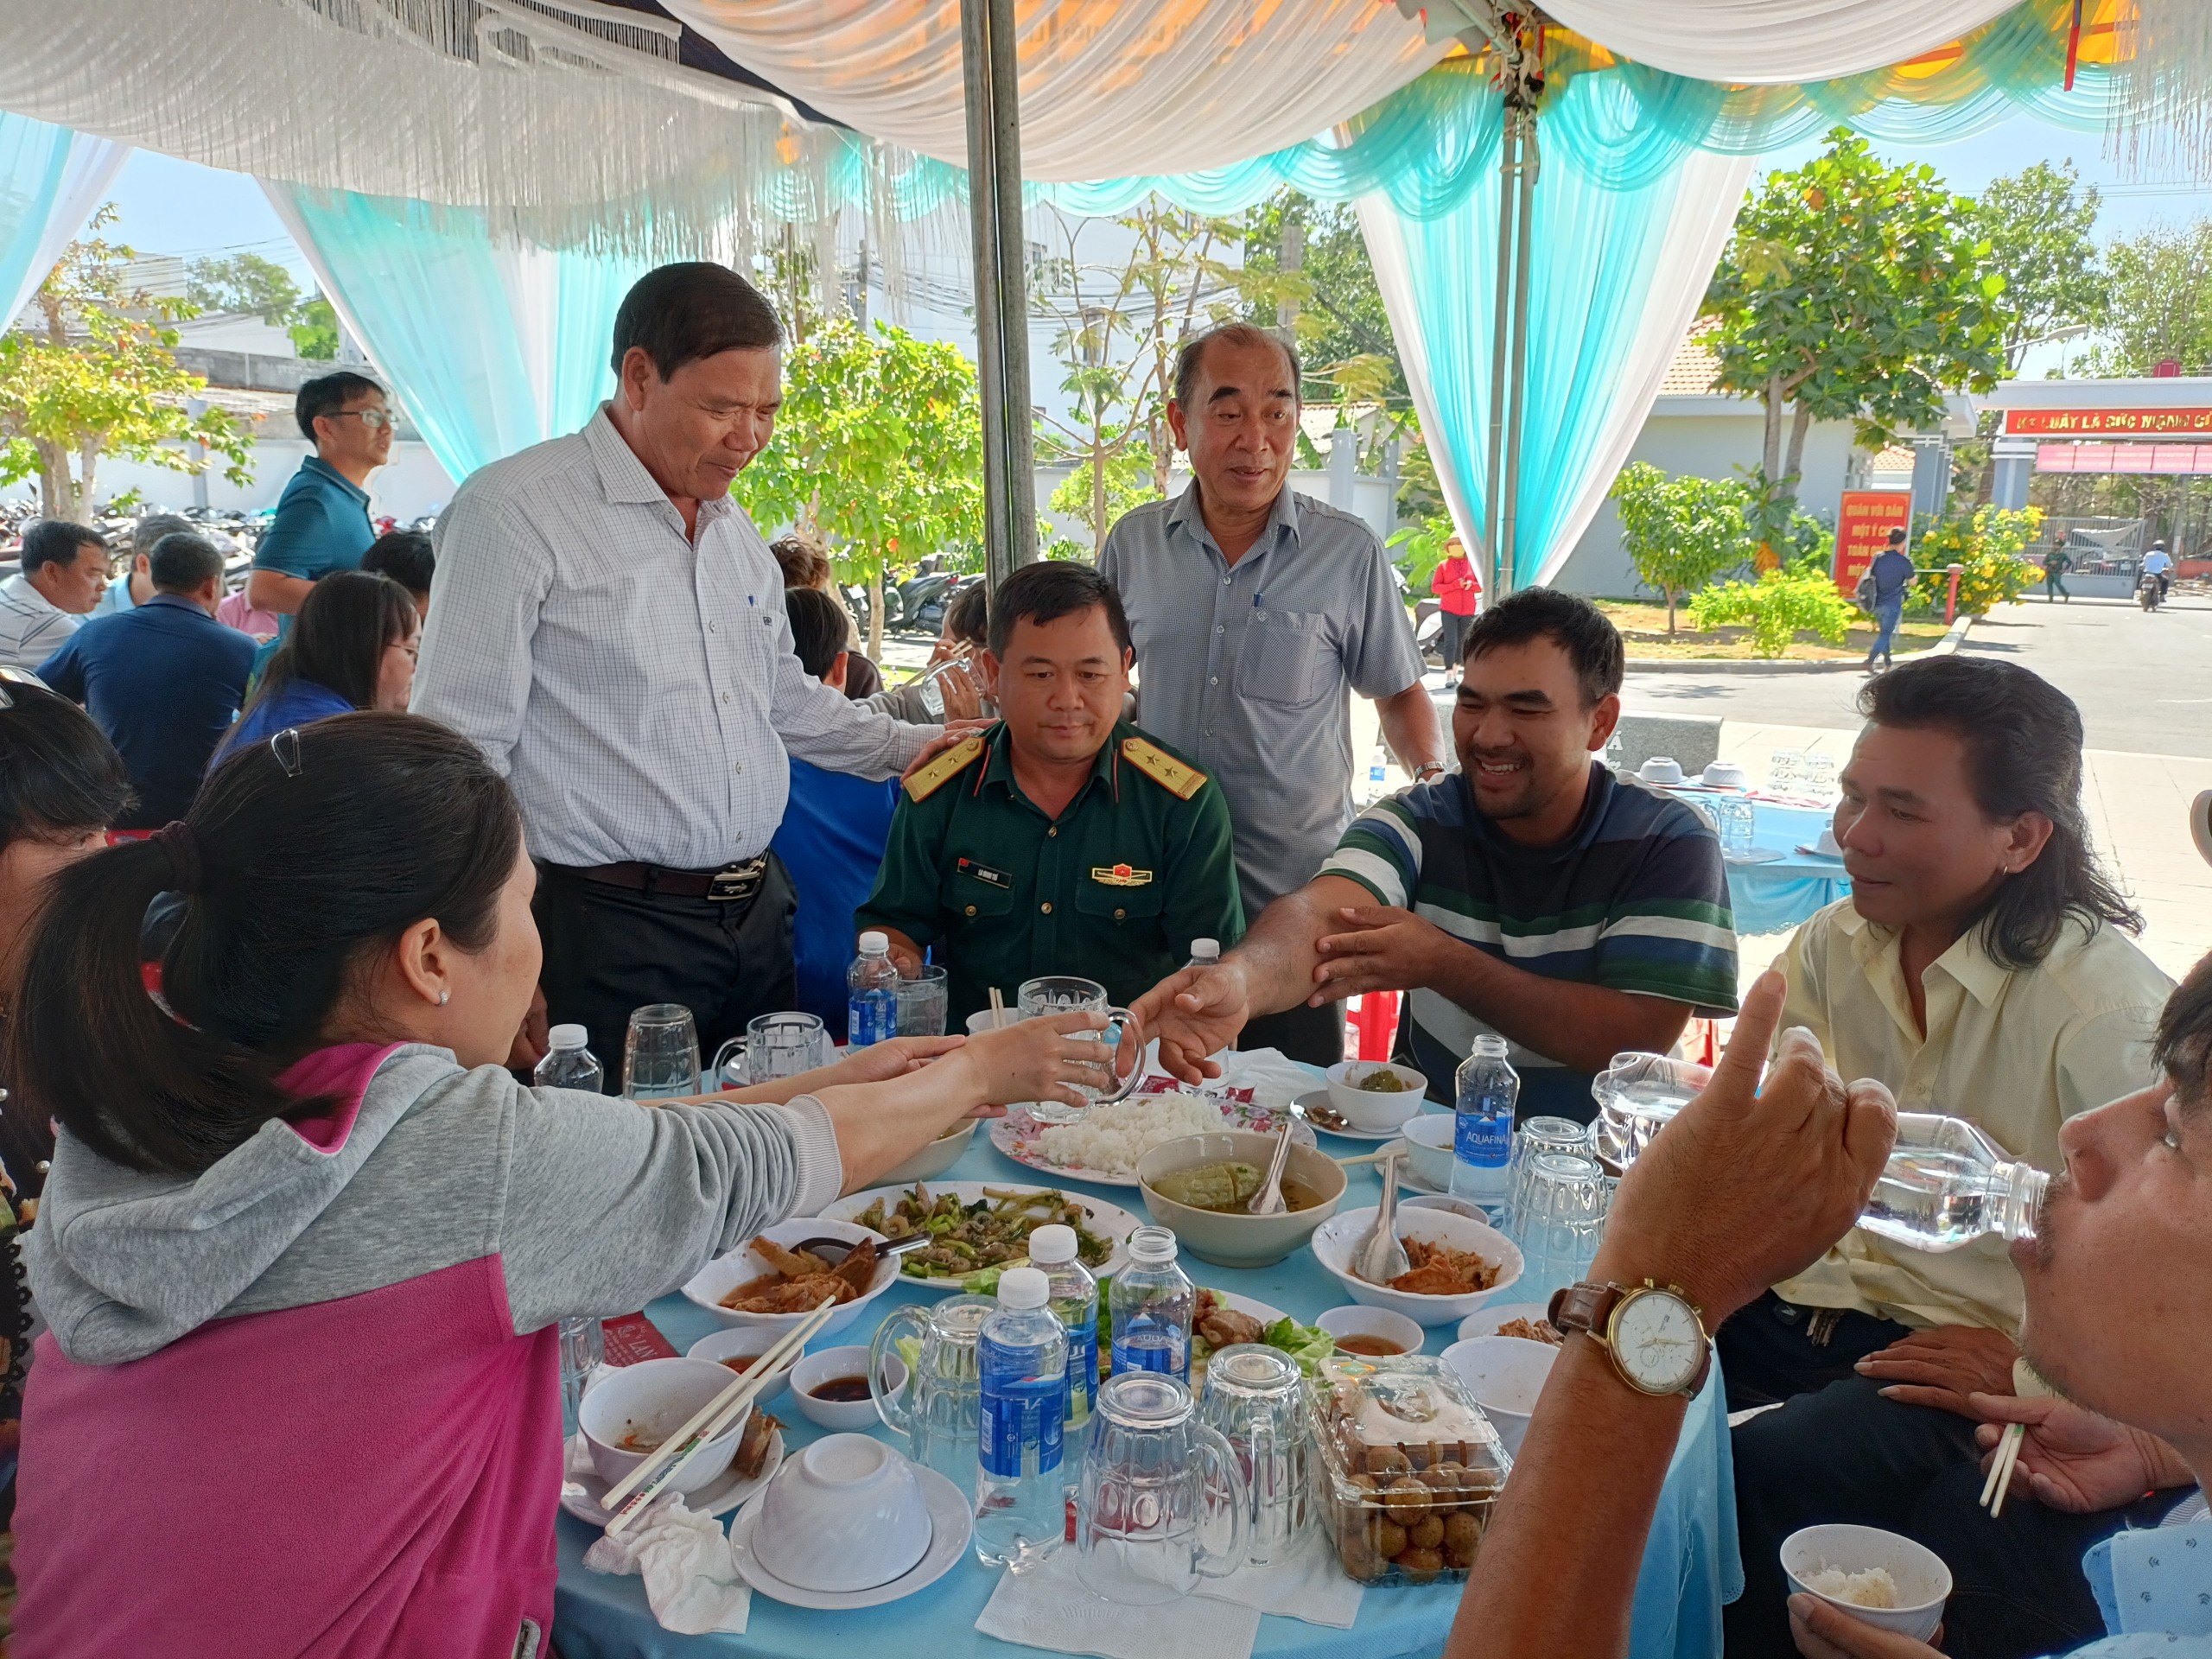 Ông Lâm Văn Hồng, Chủ tịch UBND huyện Long Điền (người đứng bên phải) trò chuyện với ngư dân trong buổi họp mặt đầu xuân, dùng cơm trưa ngày 17/2.